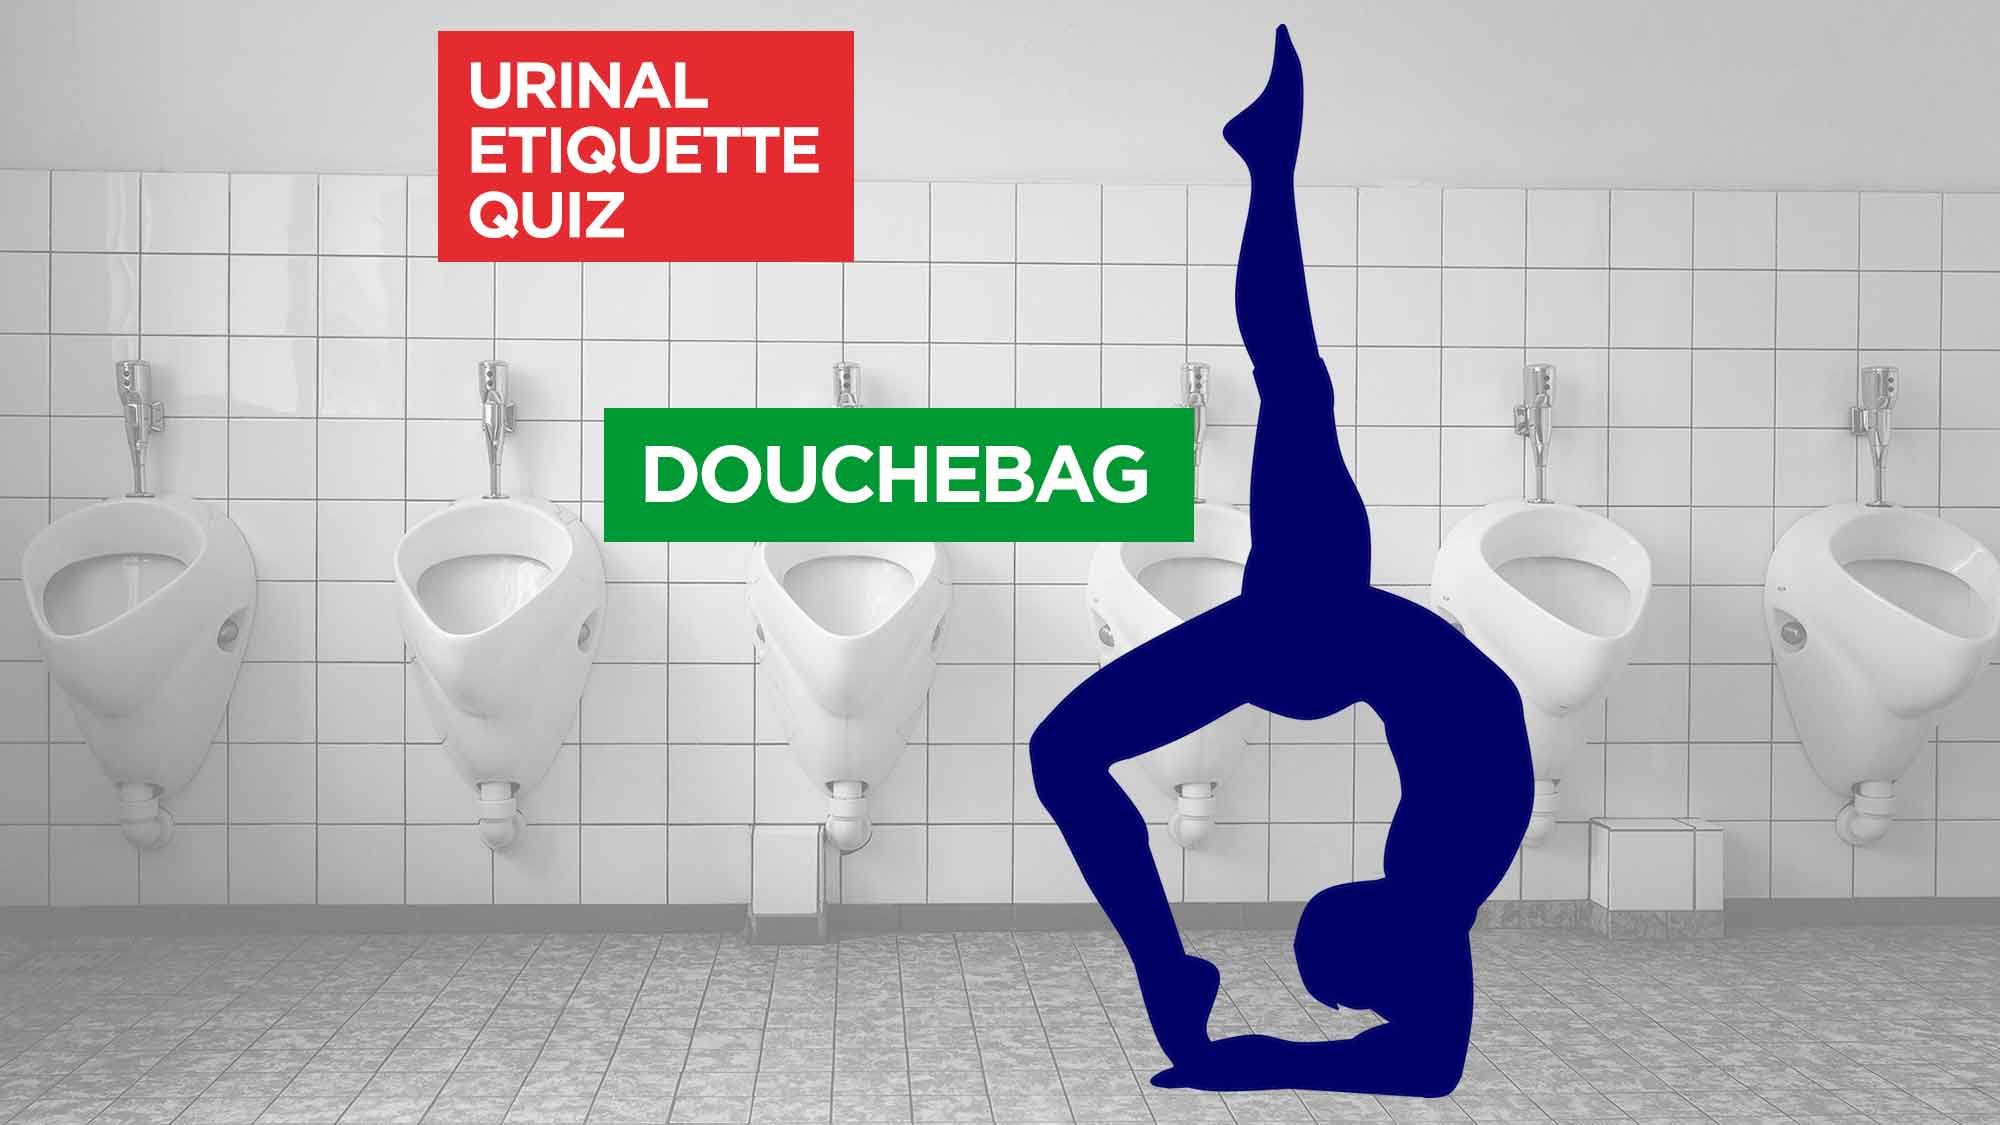 Urinal Etiquette Score Douche